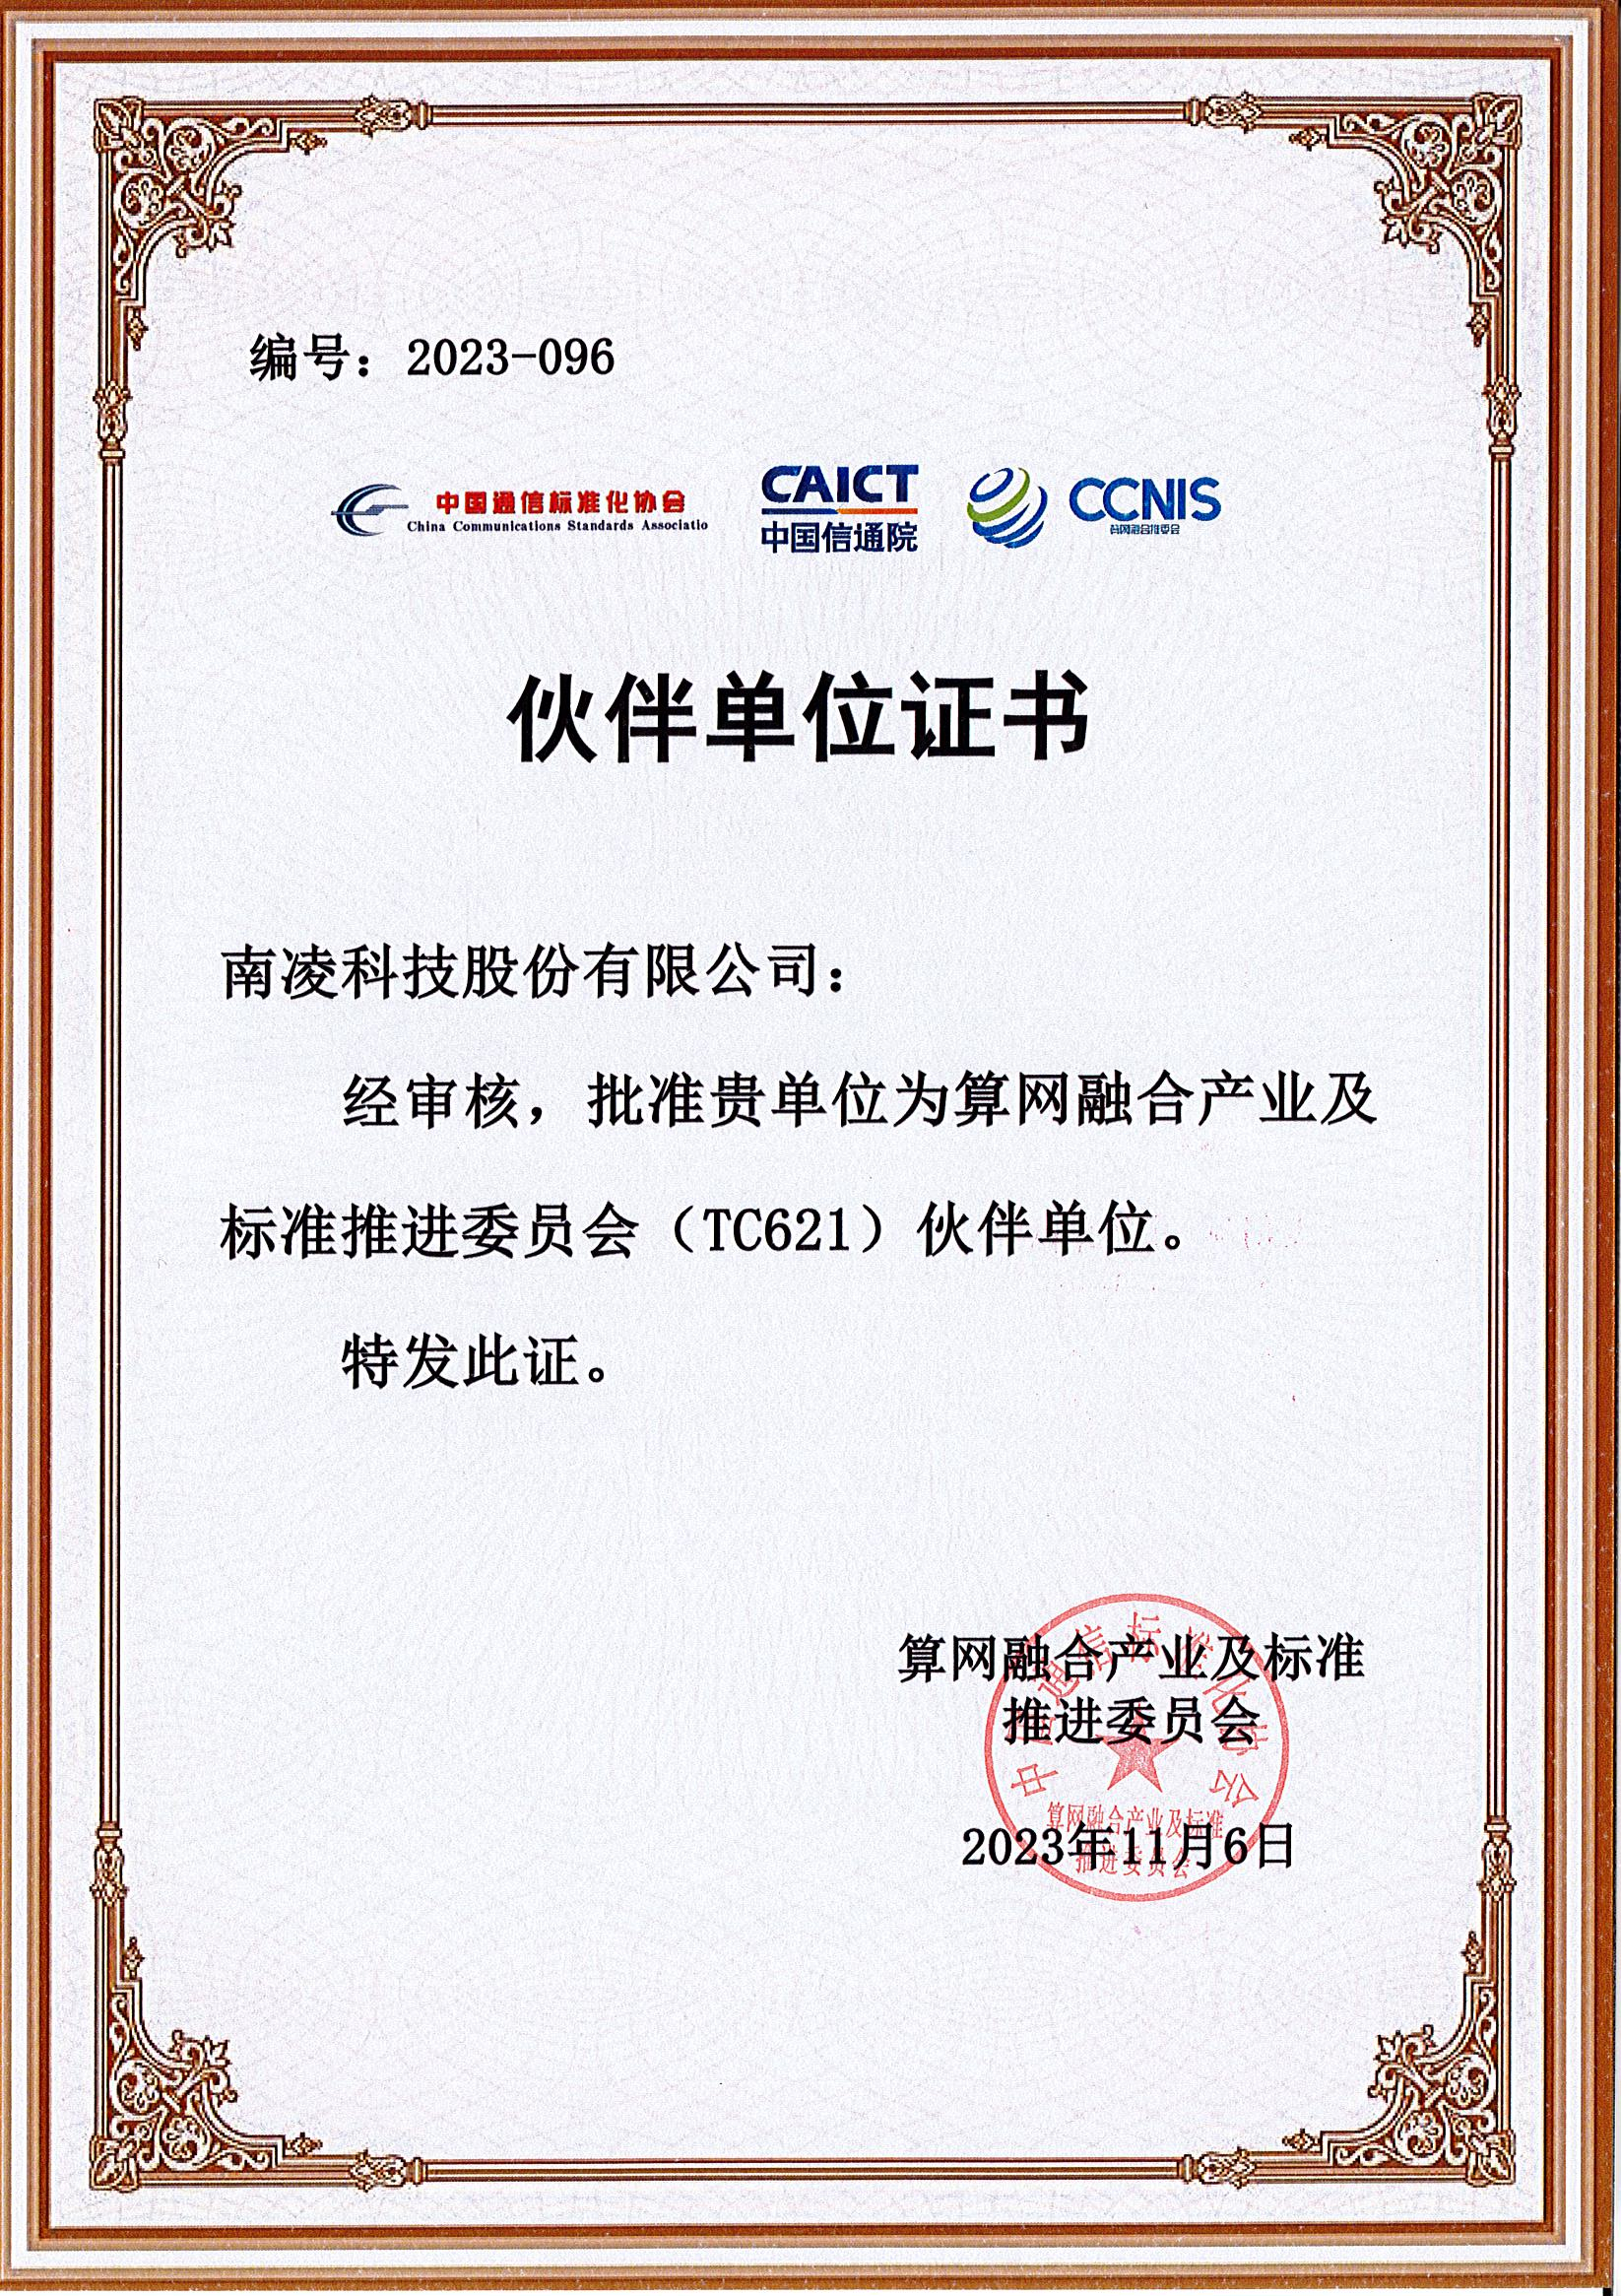 南凌科技入选中国信息通信院“算网融合产业及标准推进委员会伙伴单位”_服务器